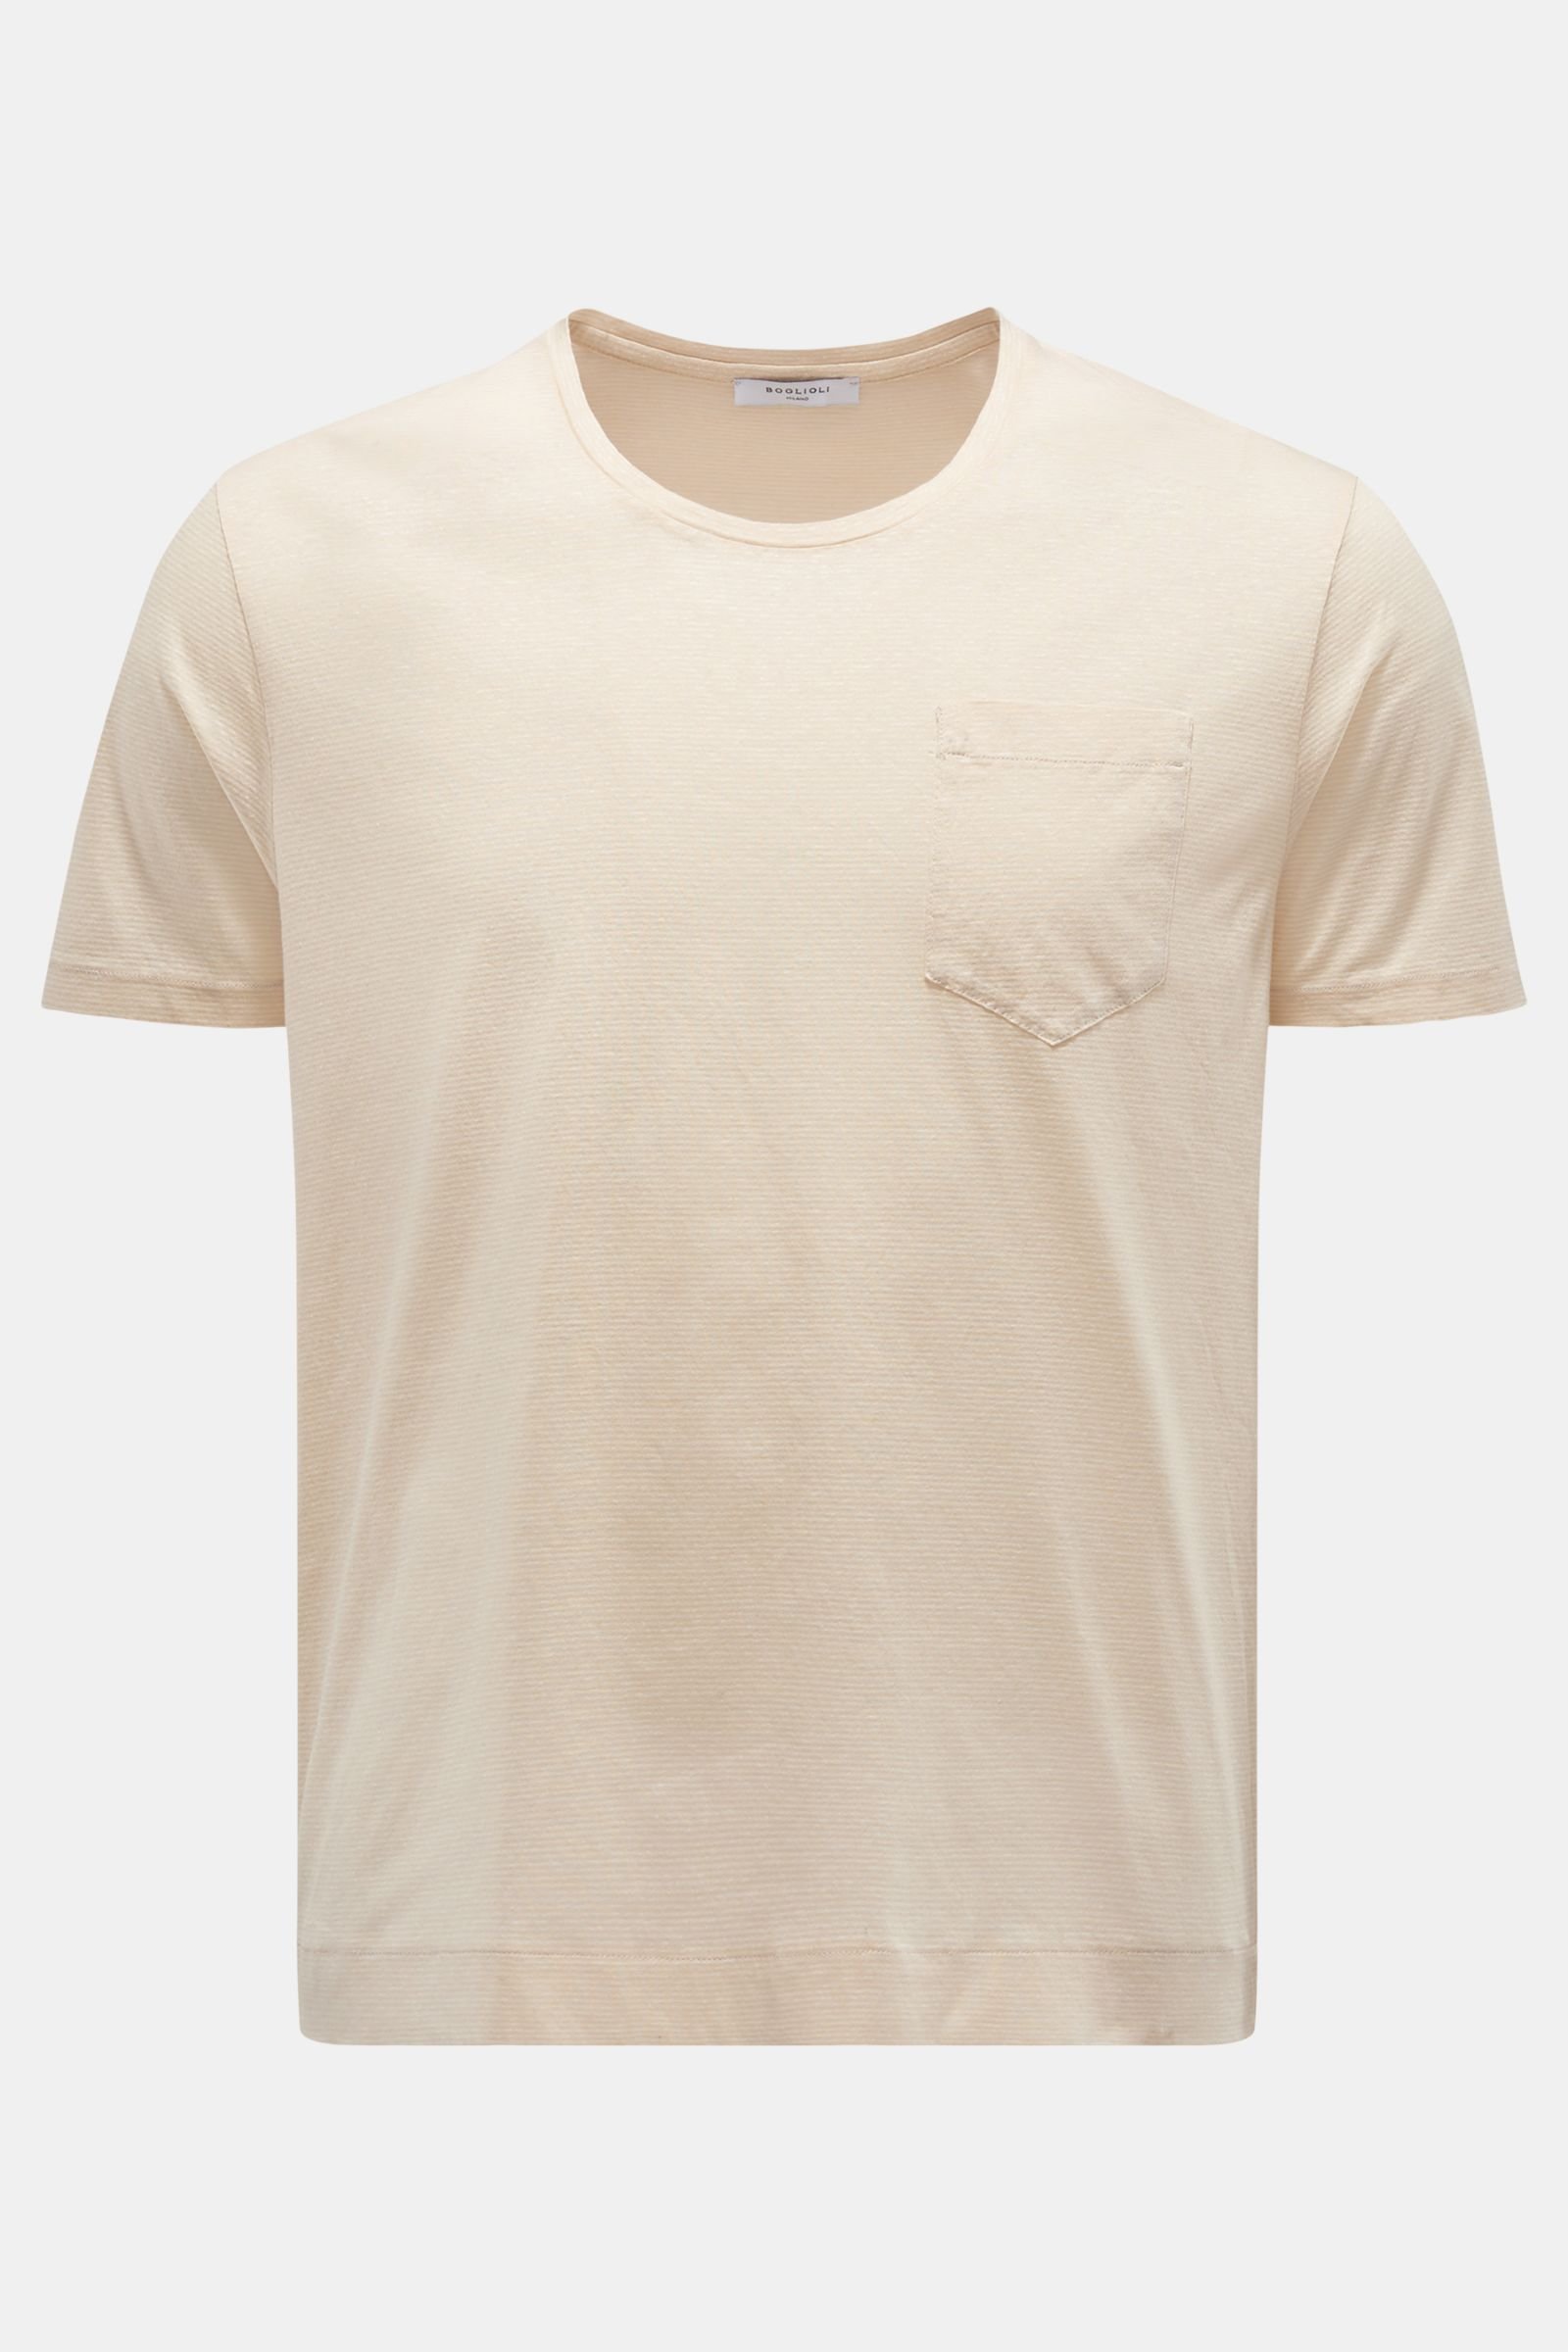 Rundhals-T-Shirt creme gestreift